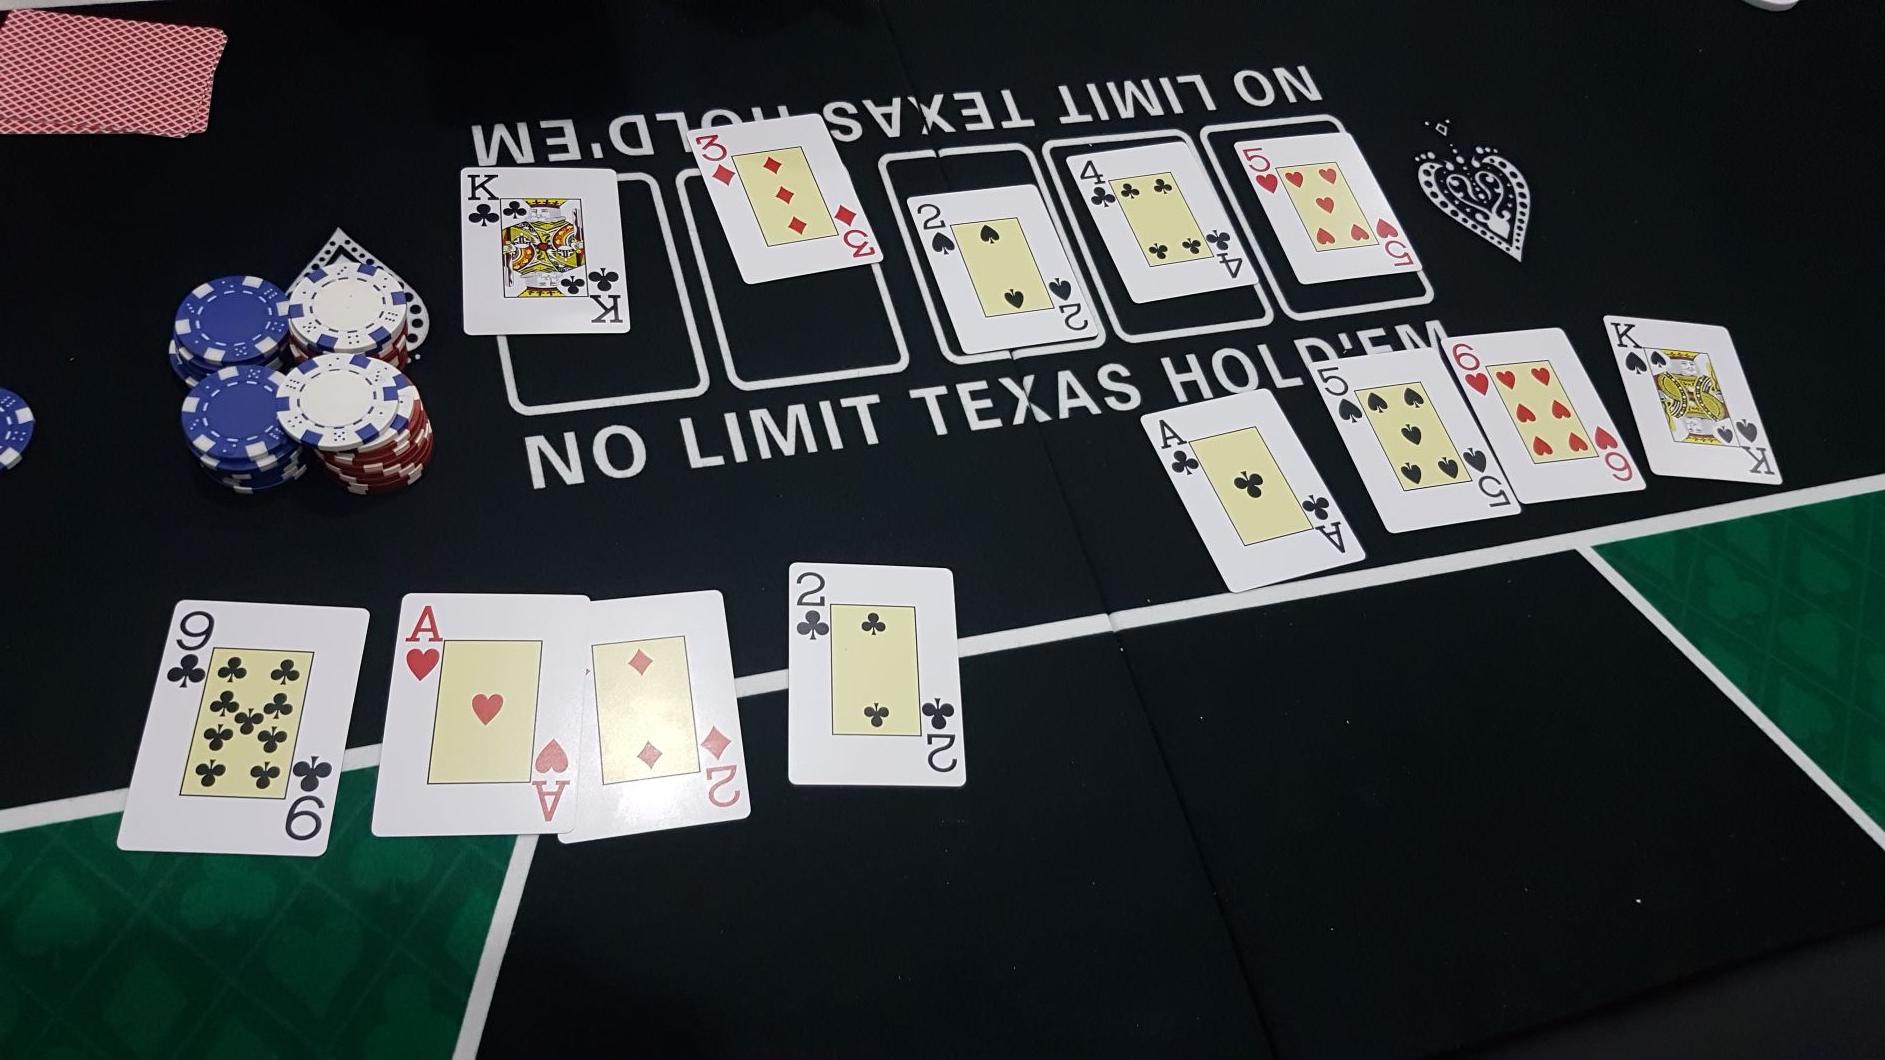 Hi-Lo Omaha Poker